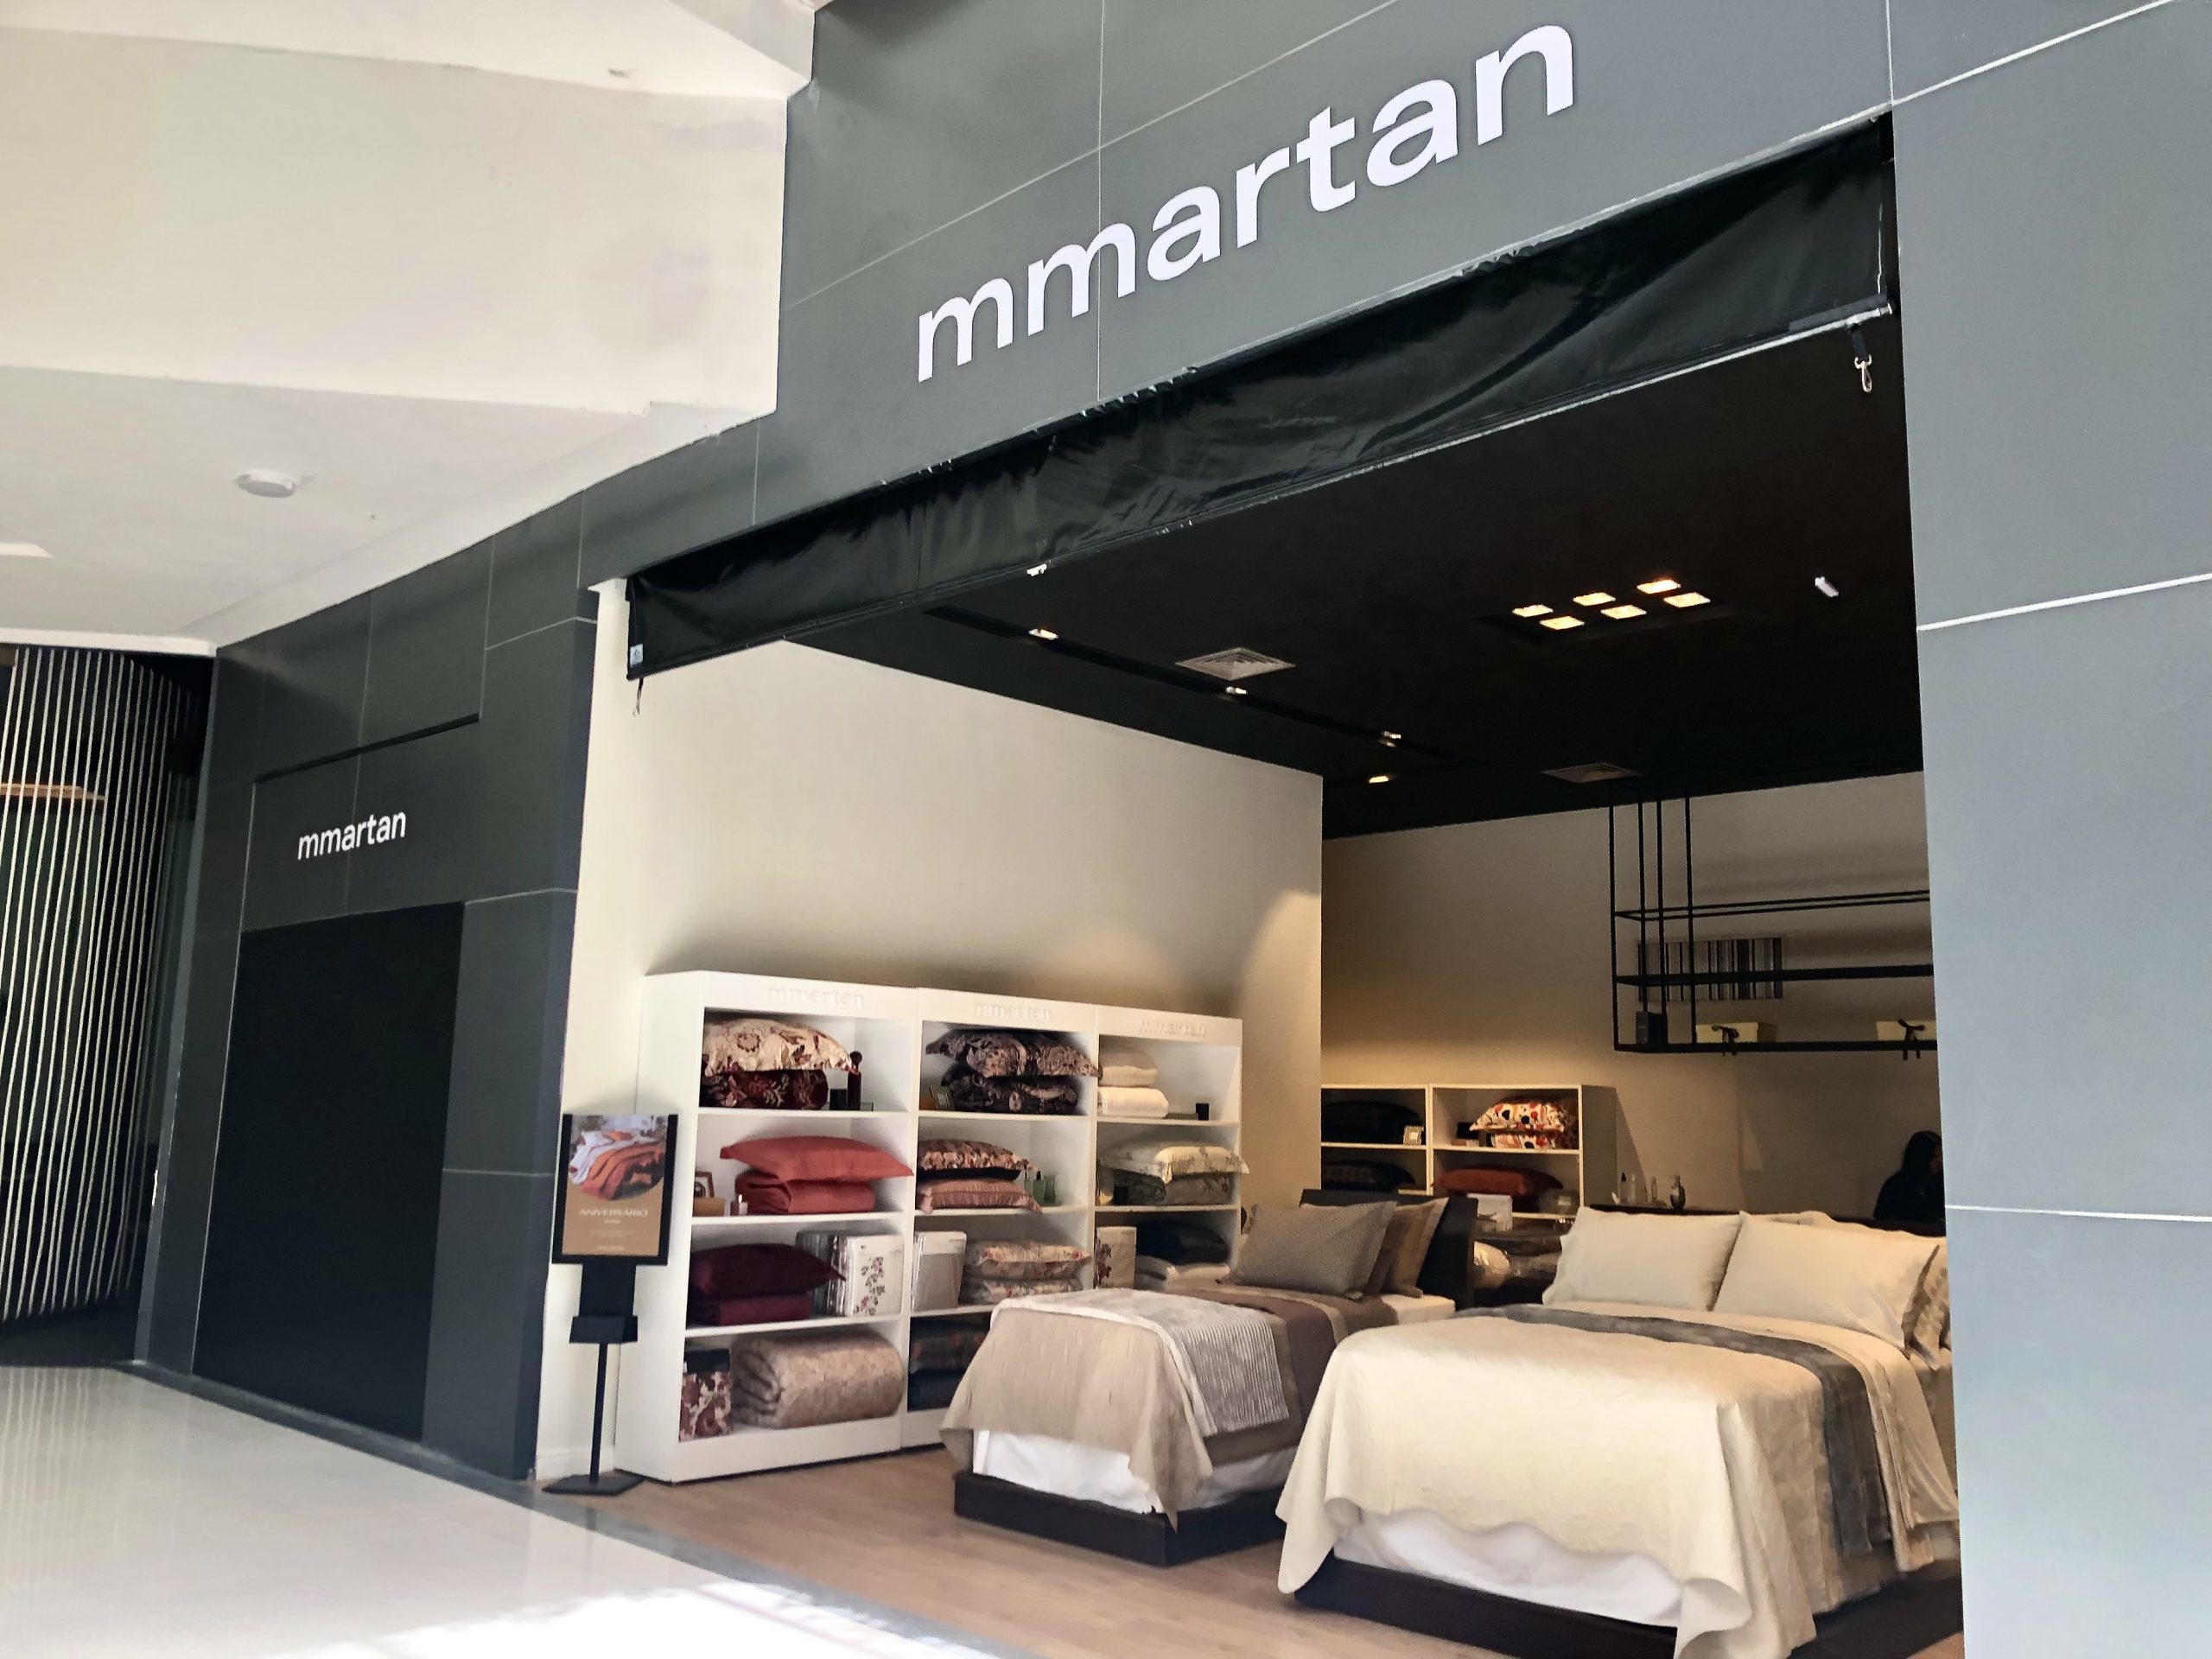 Mmartan promove Summer Sale: Renove seu espaço com conforto, qualidade e estilo